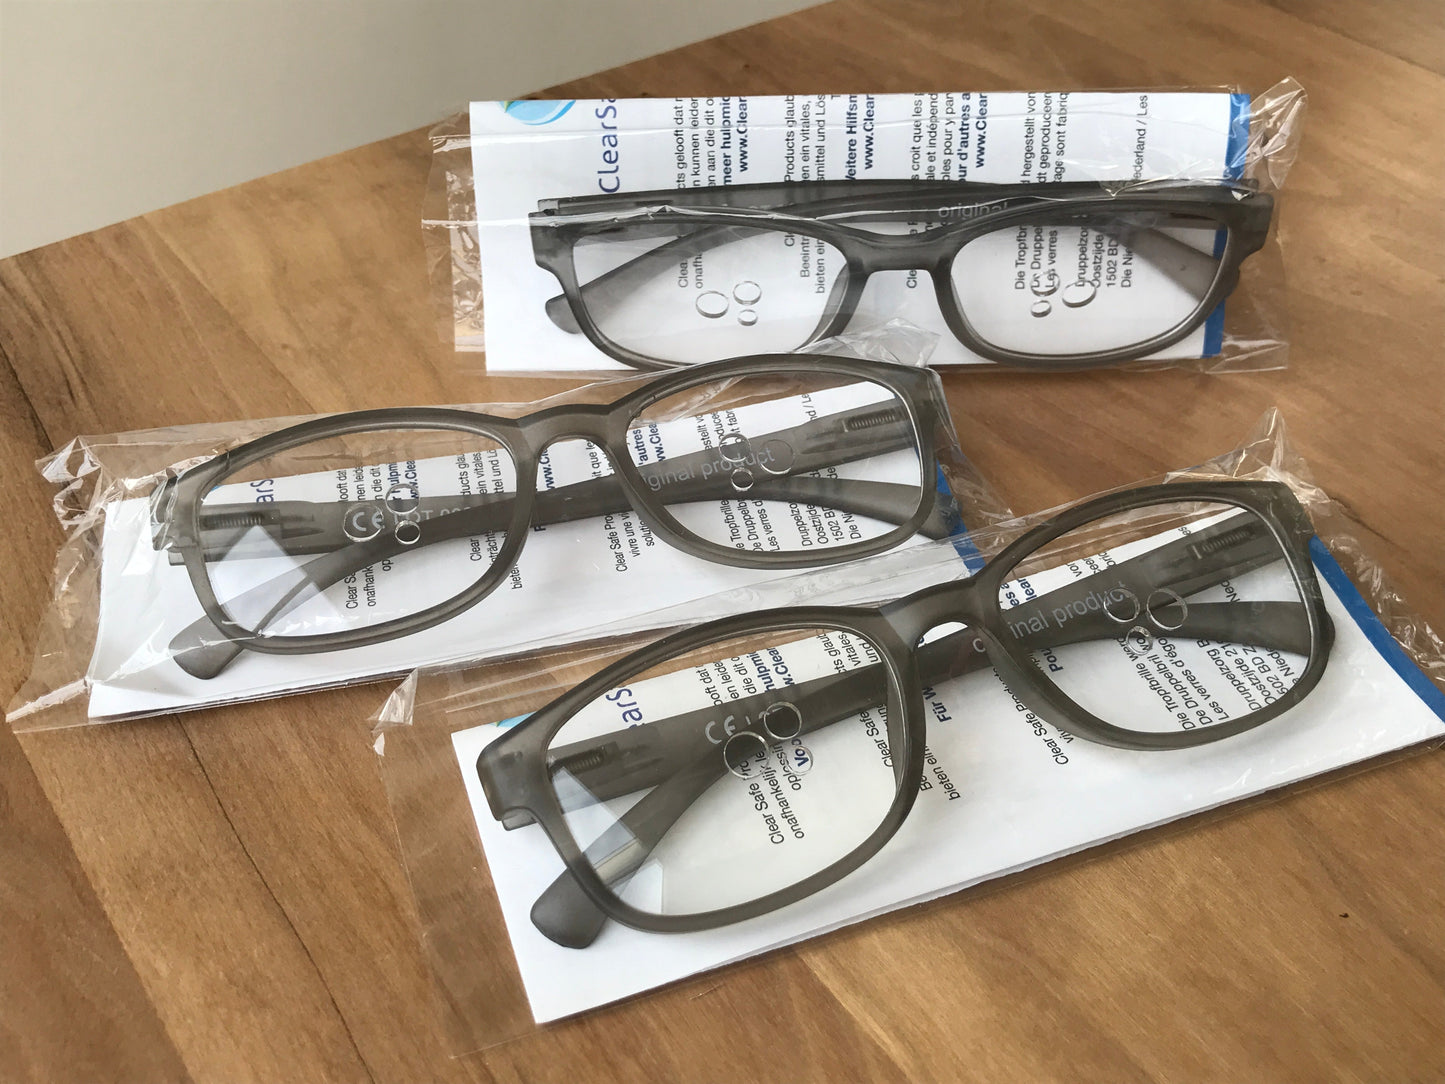 Druppel-bril, zelfstandig ogen druppelen zonder hulp